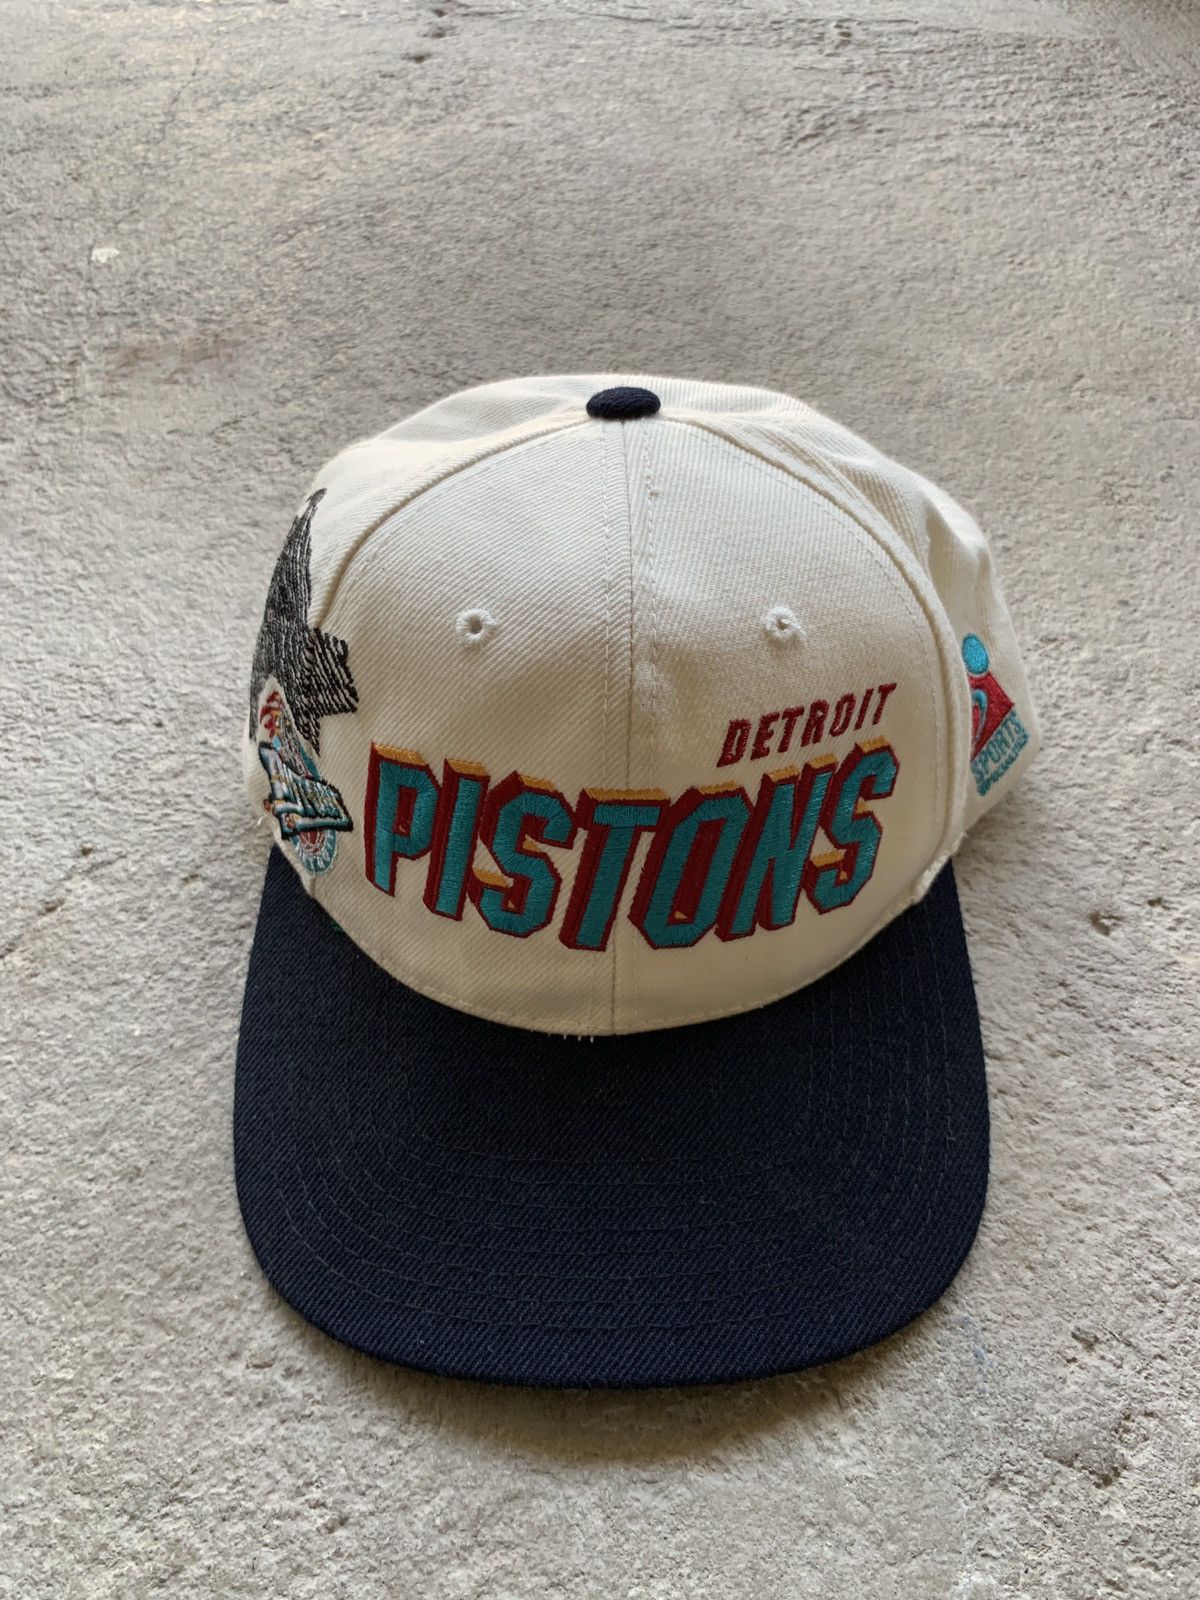 Vintage Detroit Pistons Corduroy Hat 90s Snapback Cap Sports 